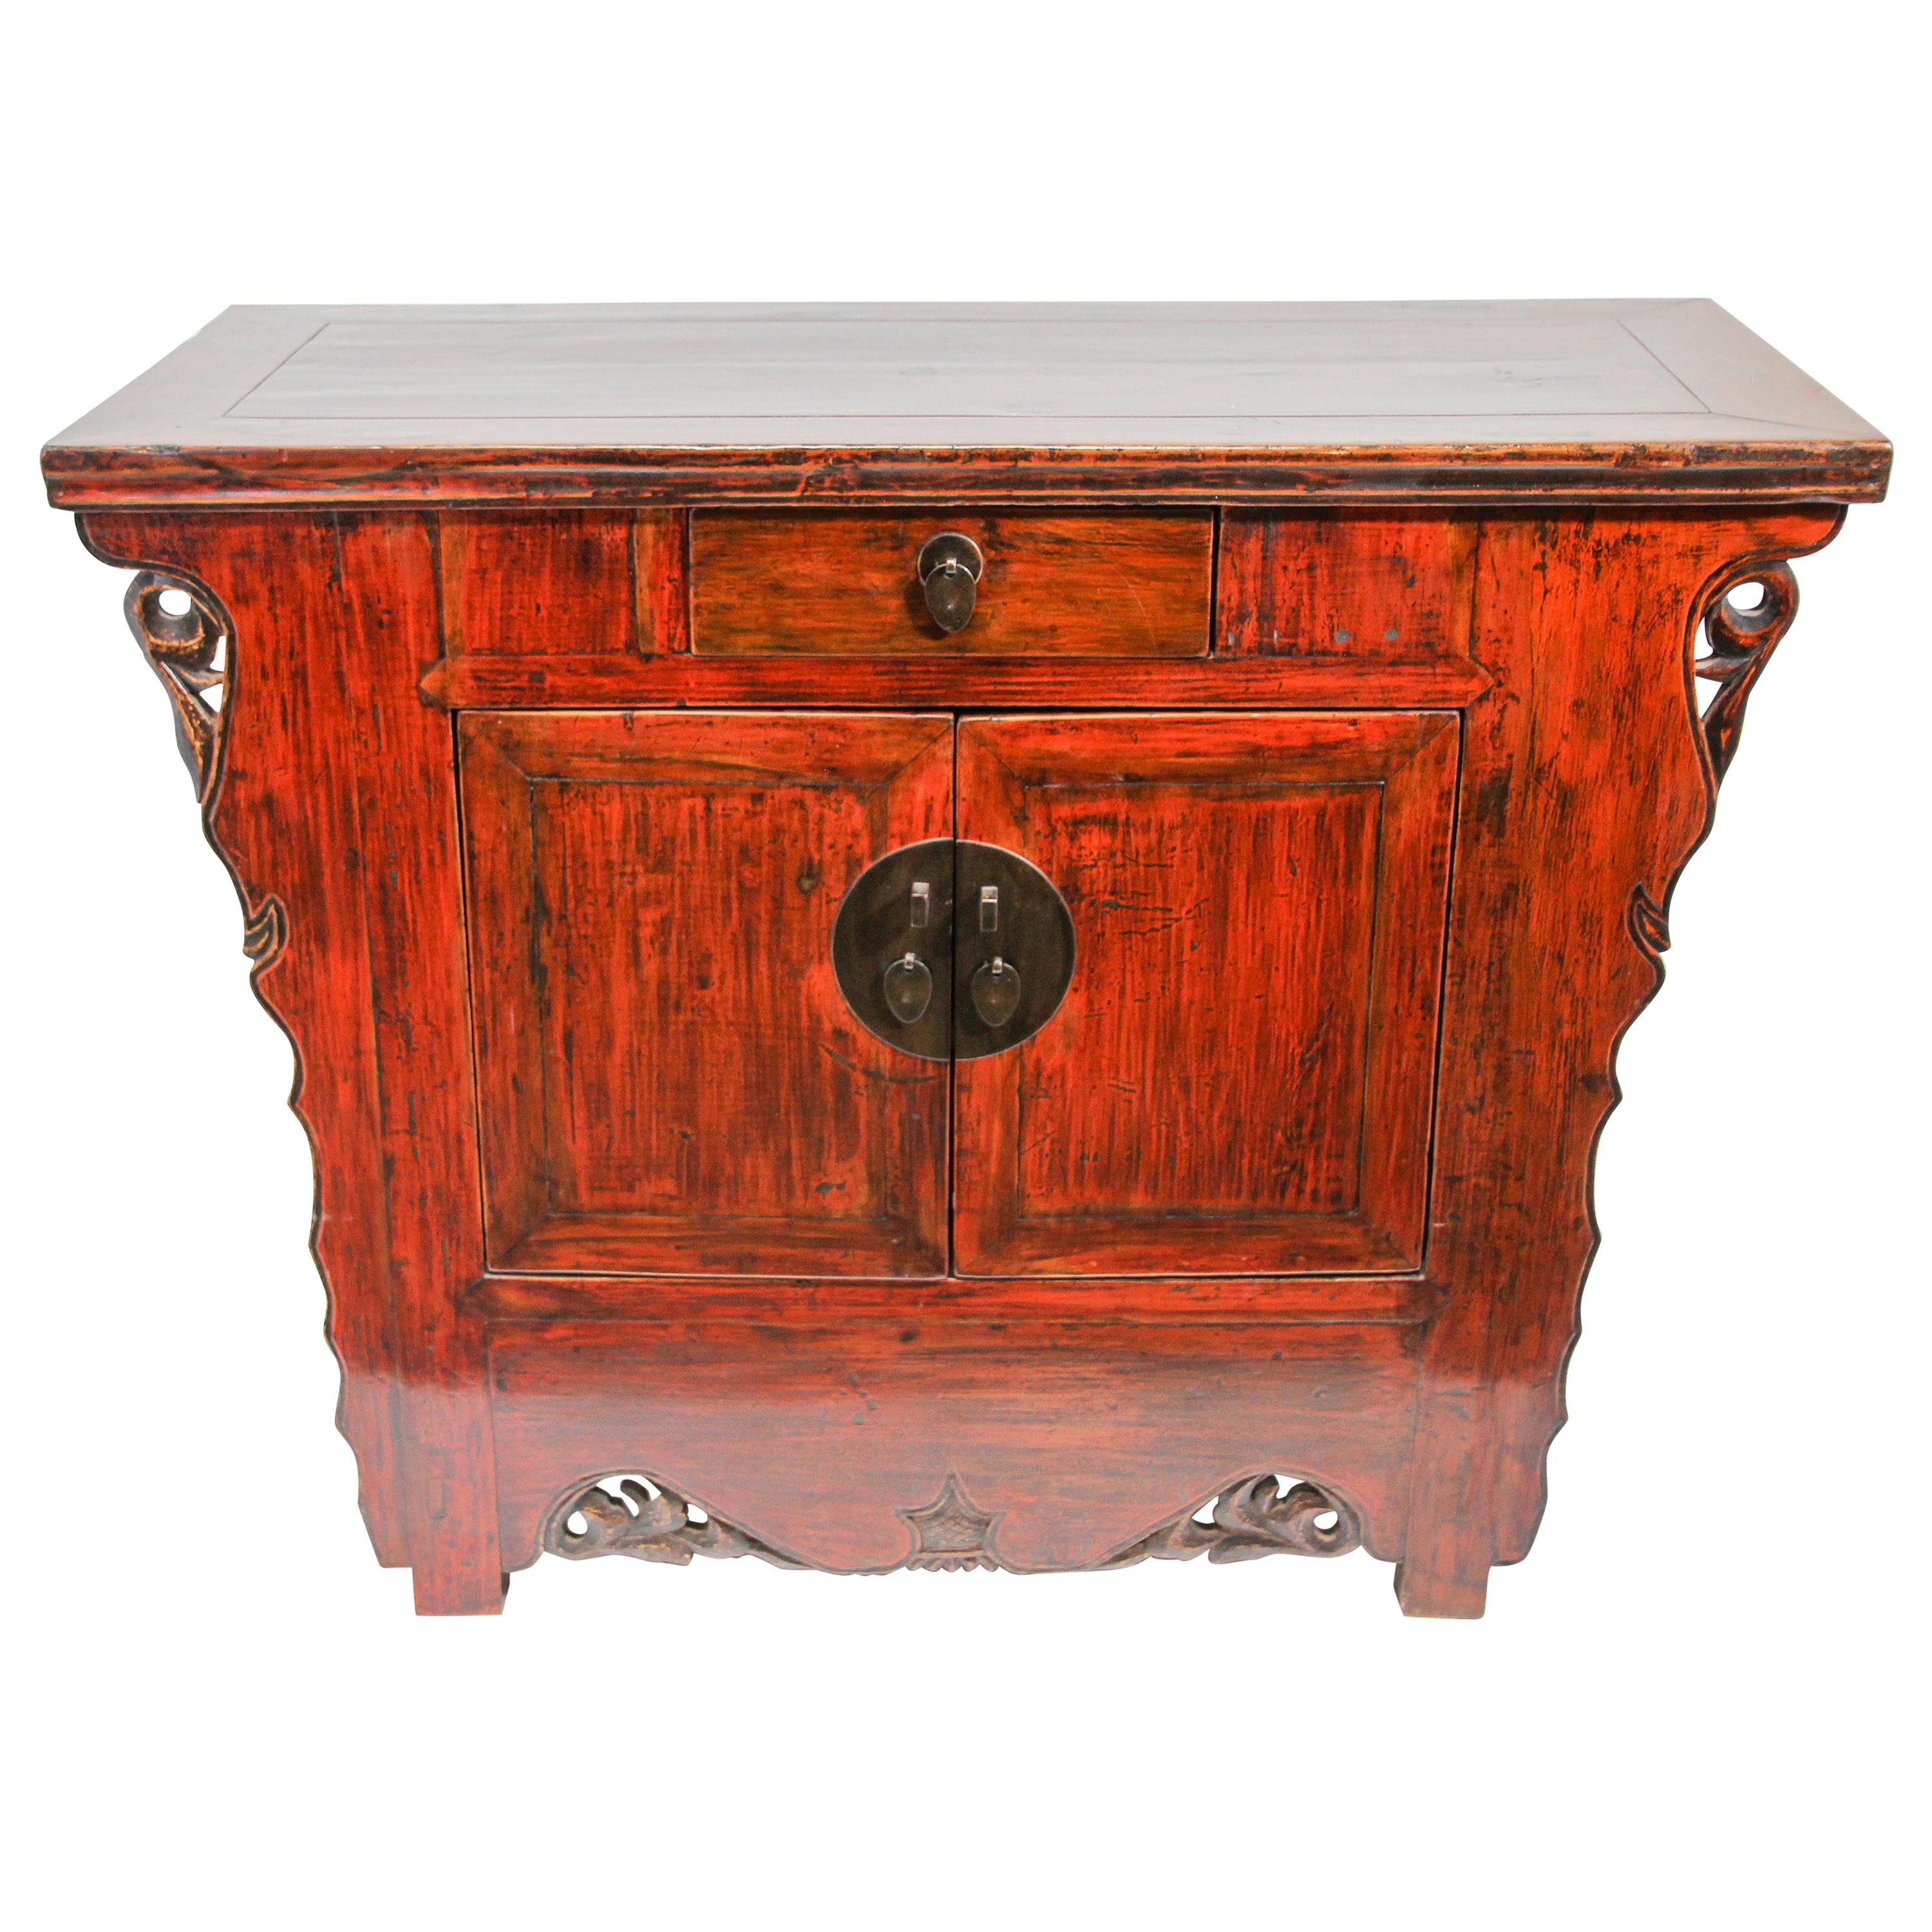 Cabinet laqué rouge de style autel de la dynastie chinoise Ming Ming